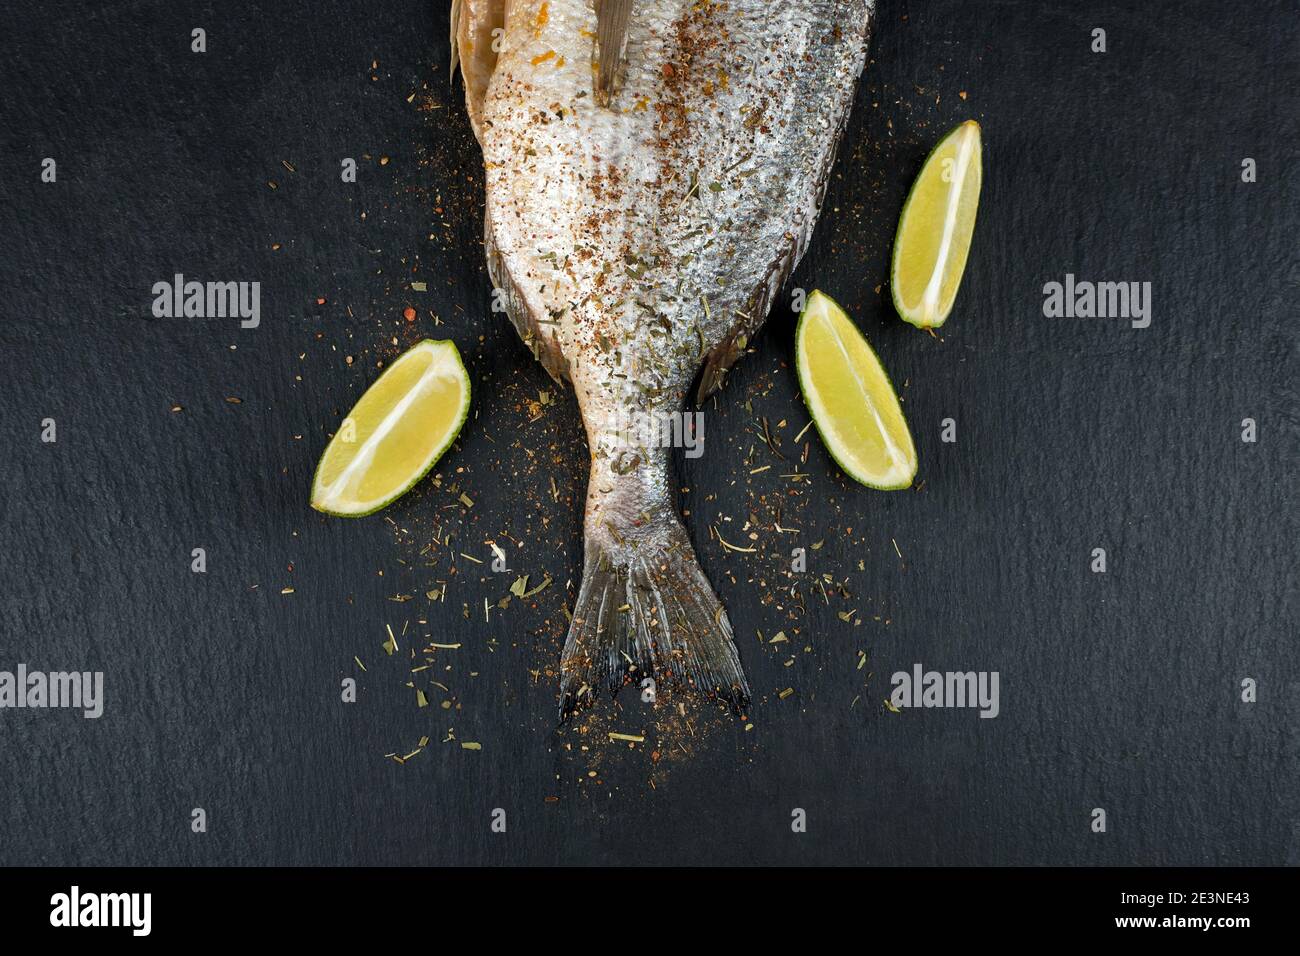 Schwanz von frischem rohem dorado auf schwarzem Schiefersteinbrett mit Gewürzen, Kräutern und Limette. Brassen Fisch bereit zum Kochen. Draufsicht. Stockfoto